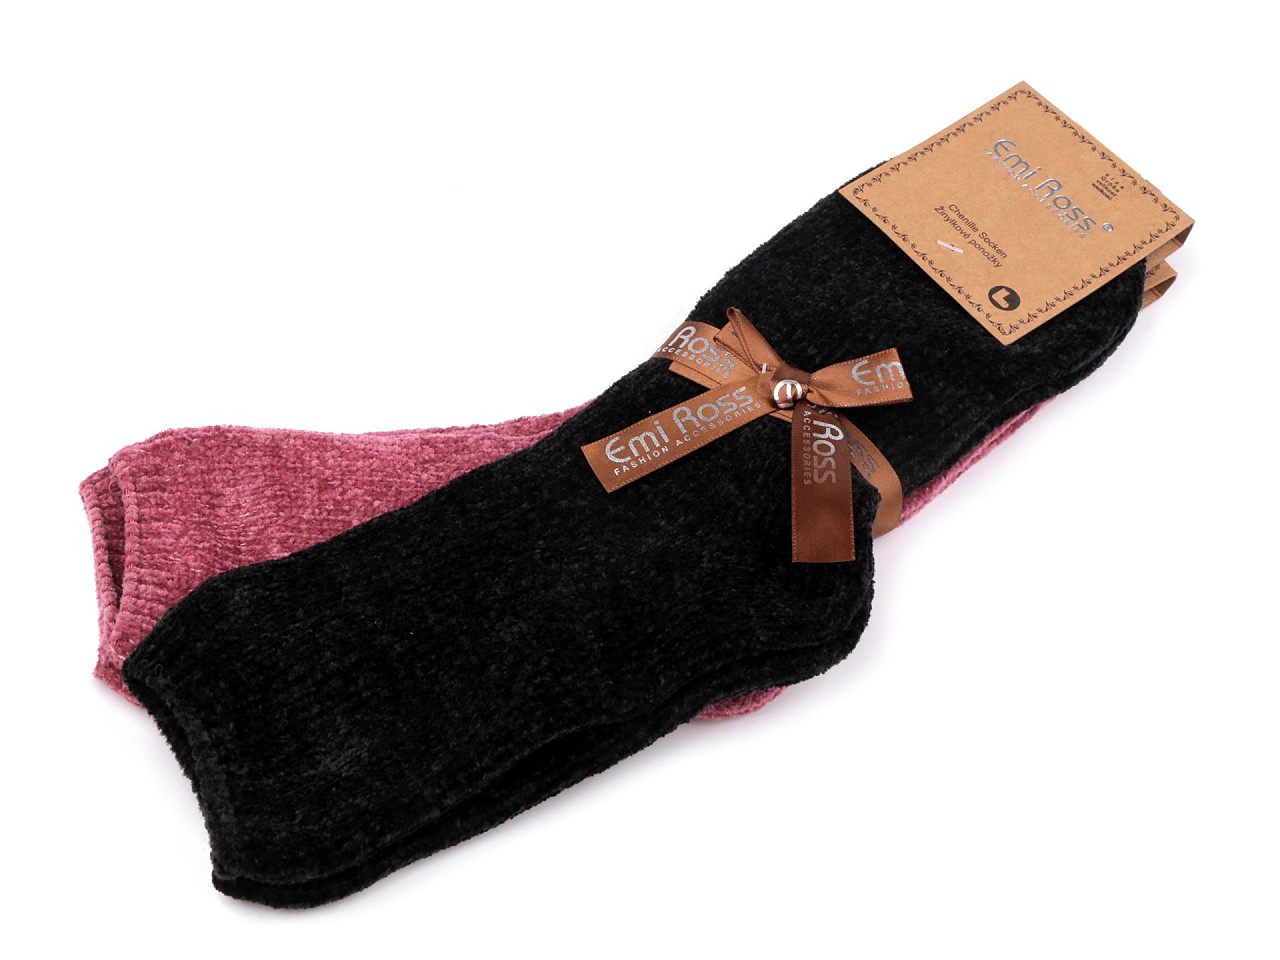 Dámské žinylkové ponožky Emi Ross, barva 20 (vel. 35-38) mix